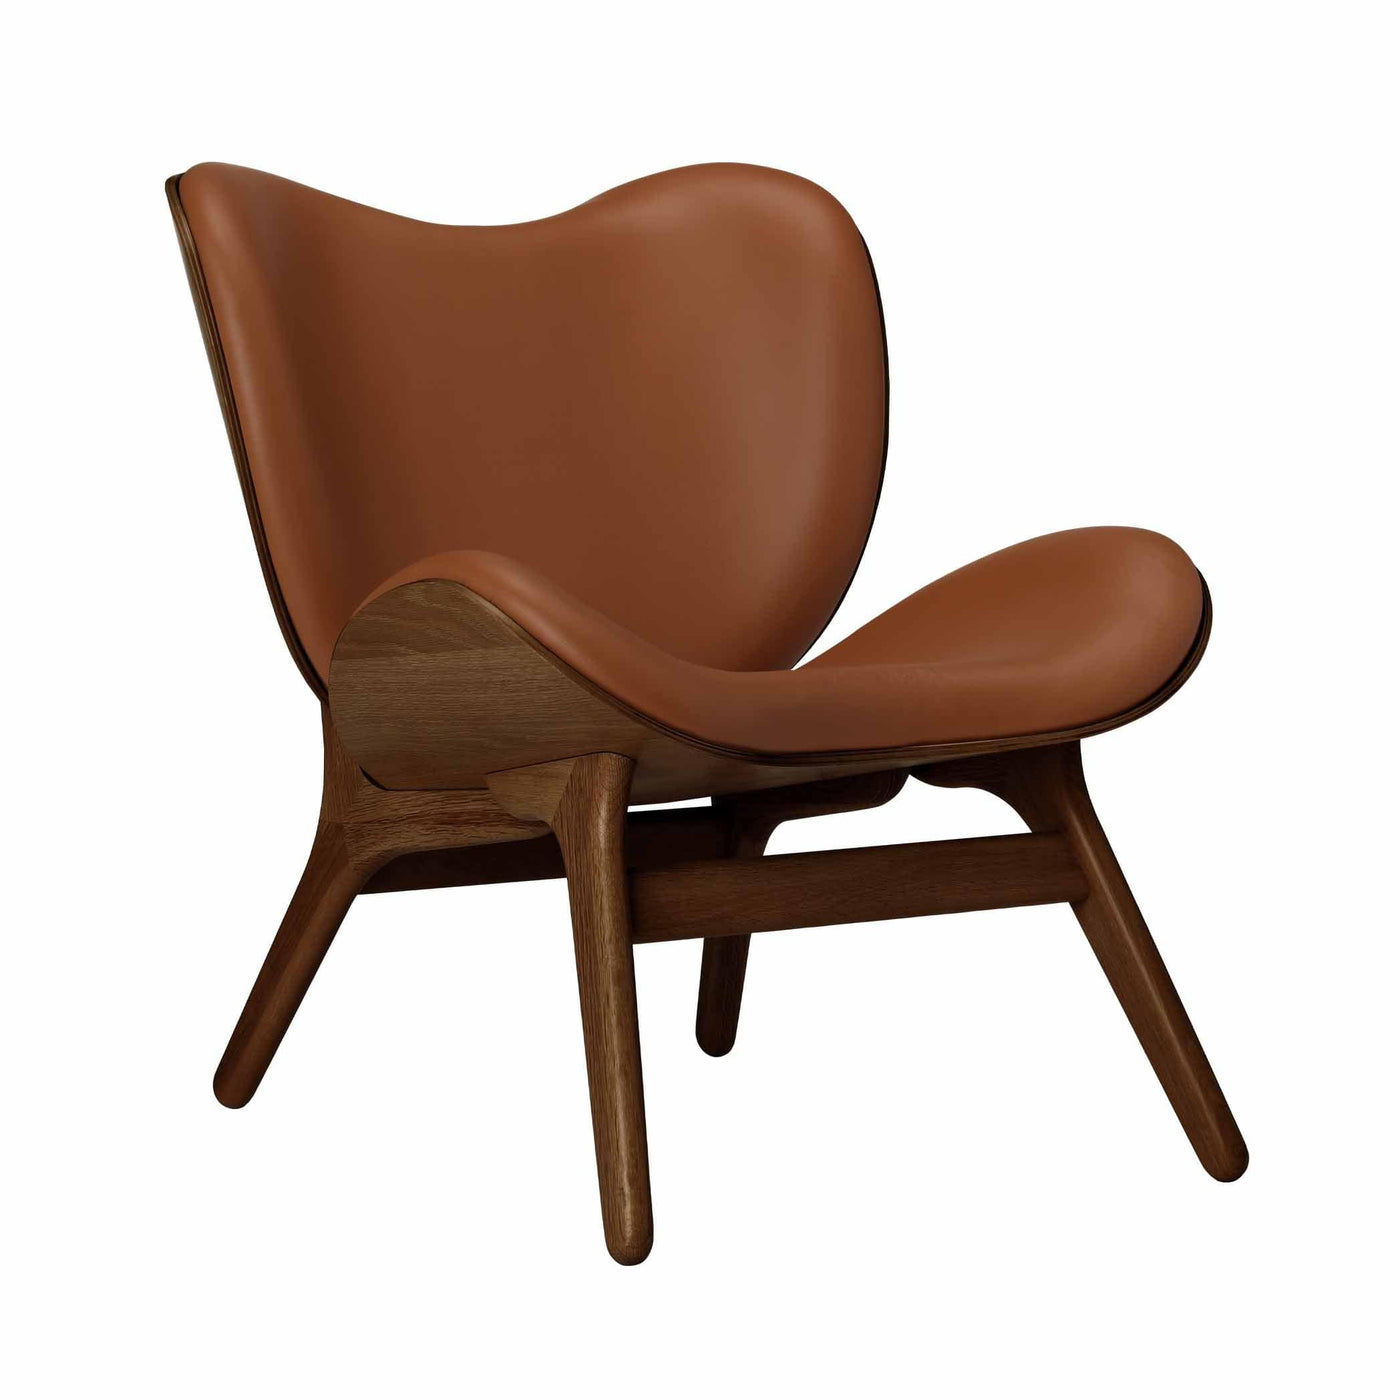 Umage A Conversation Piece Low, fauteuil confortable avec dossier bas, en bois et tissu, chêne foncé, cuir cognac